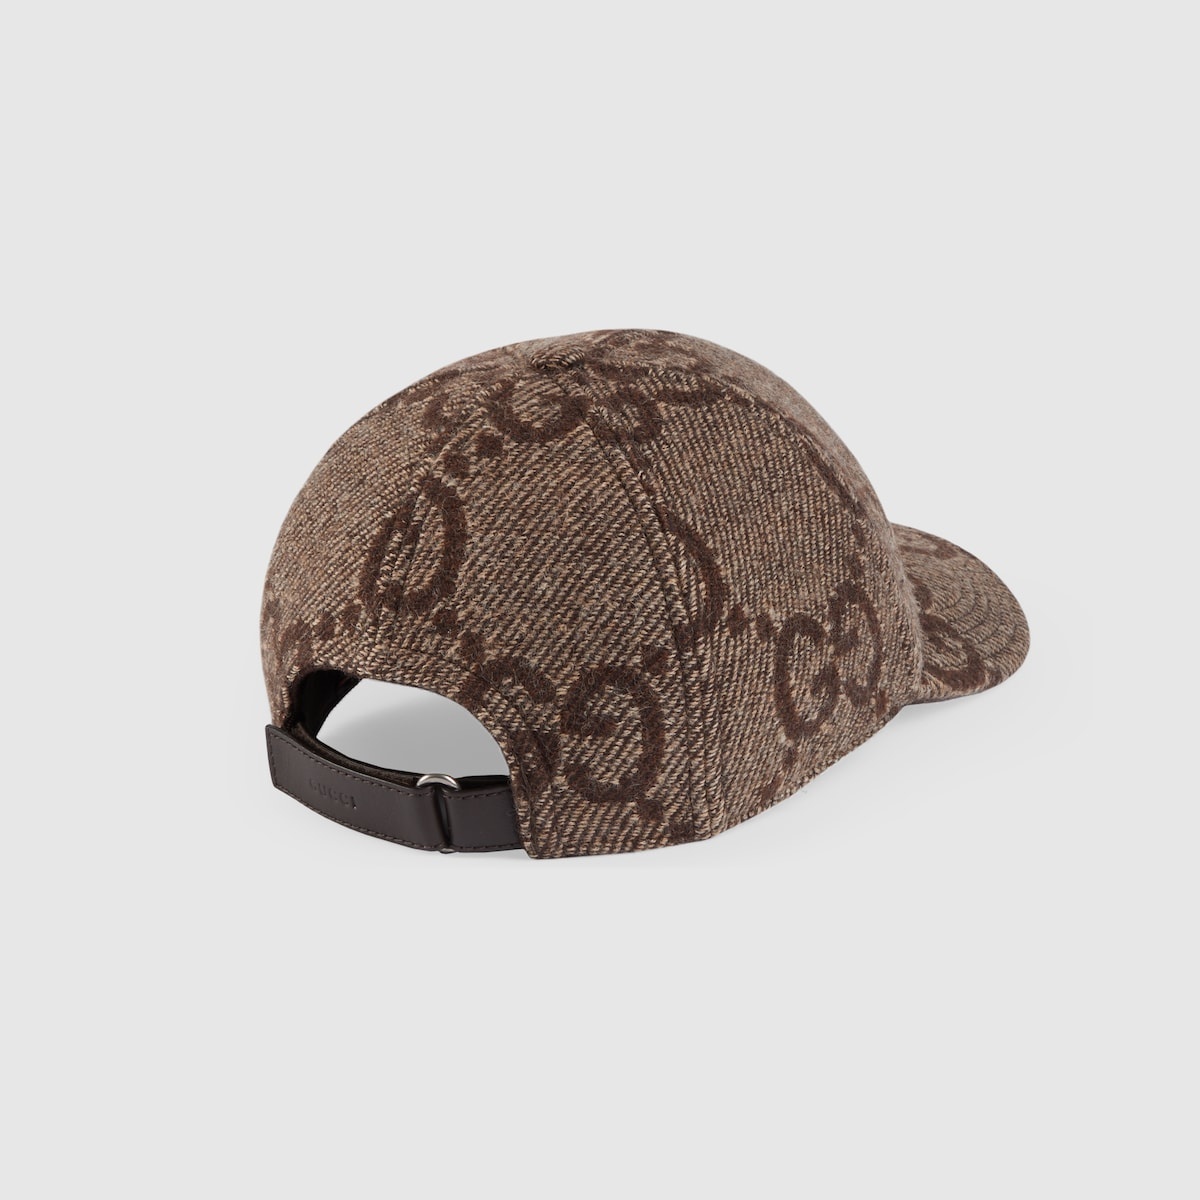 Jumbo GG wool baseball hat - 5